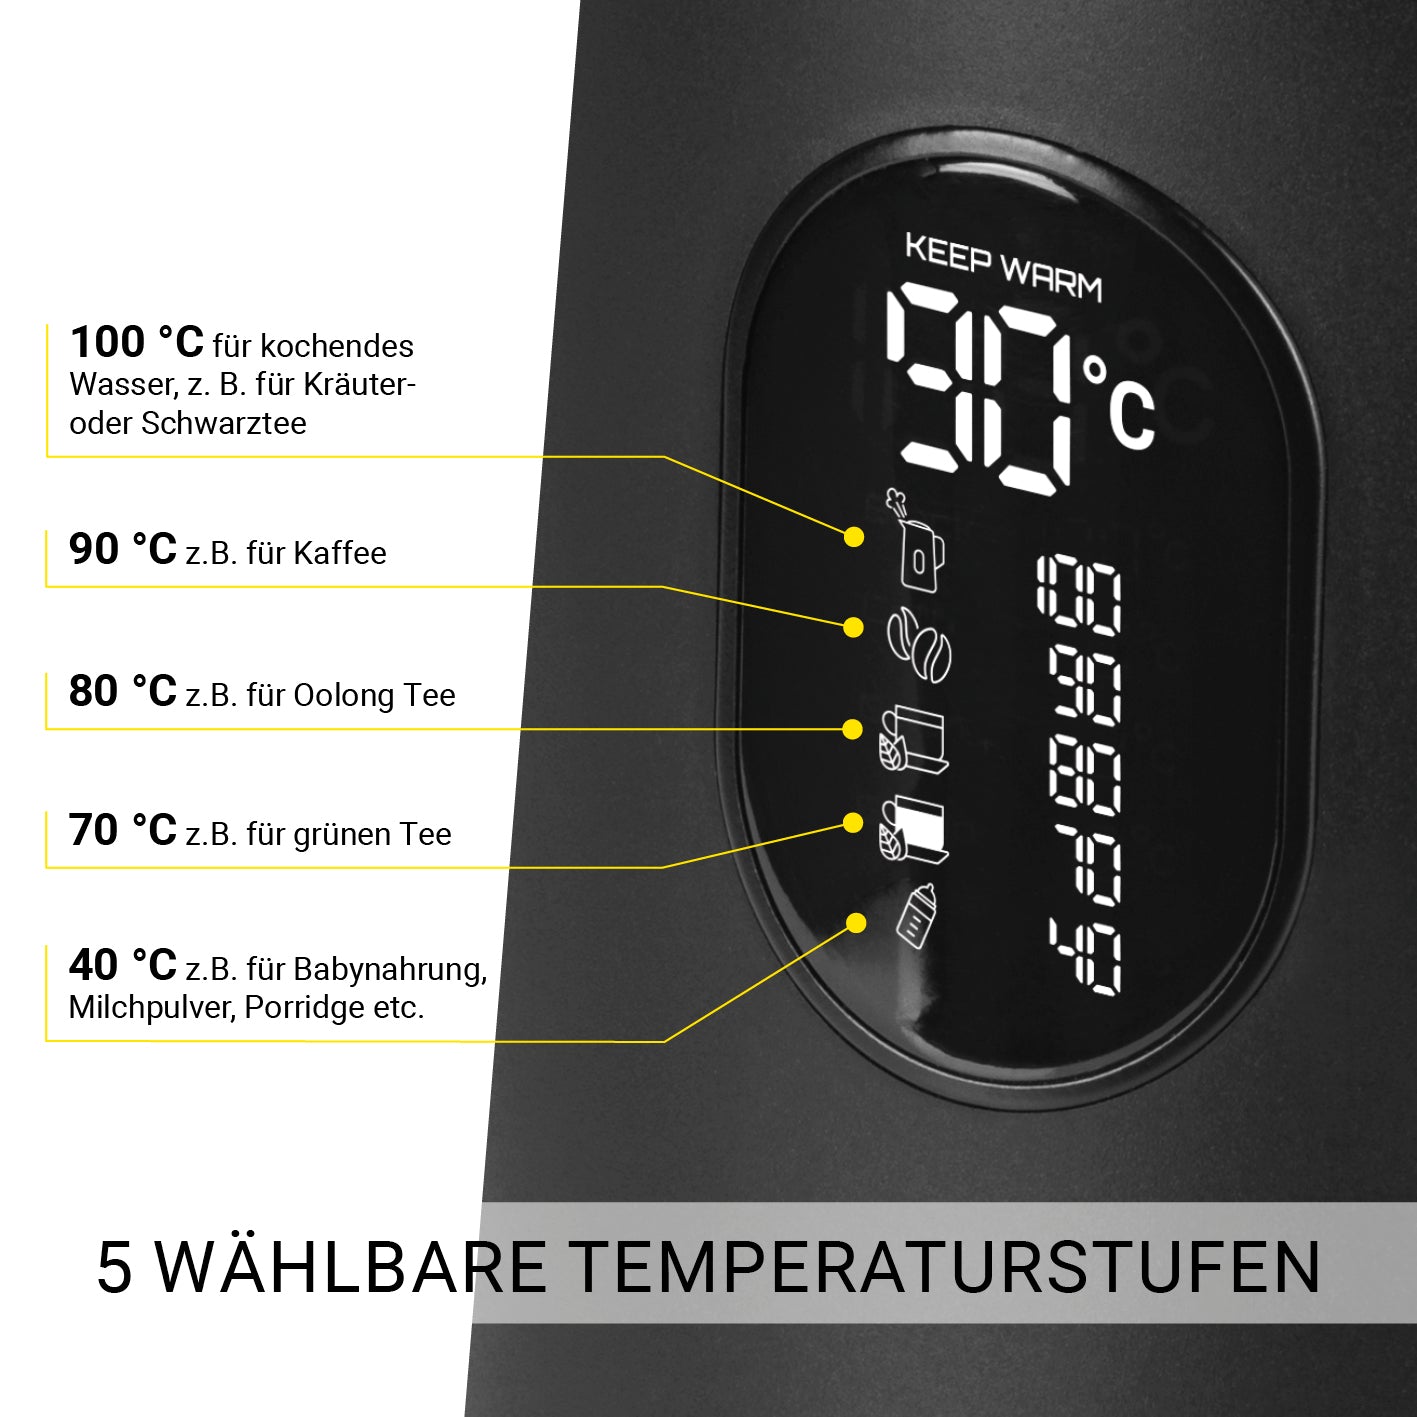 Digitaler Wasserkocher mit Temperatureinstellung Midnight Black Edition